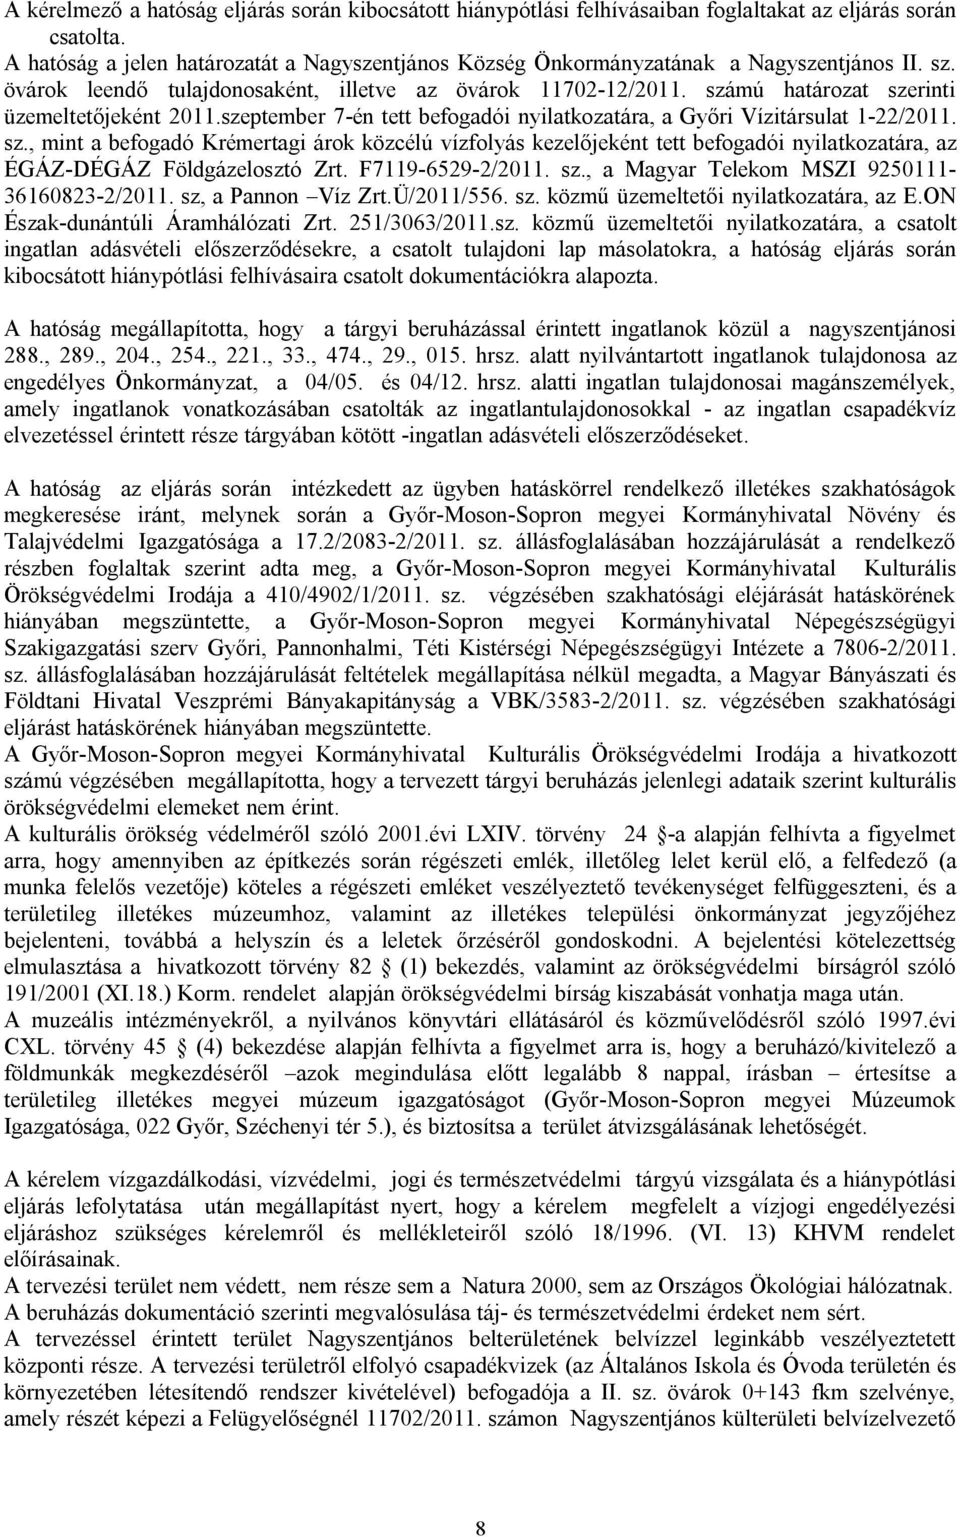 számú határozat szerinti üzemeltetőjeként 2011.szeptember 7-én tett befogadói nyilatkozatára, a Győri Vízitársulat 1-22/2011. sz., mint a befogadó Krémertagi árok közcélú vízfolyás kezelőjeként tett befogadói nyilatkozatára, az ÉGÁZ-DÉGÁZ Földgázelosztó Zrt.